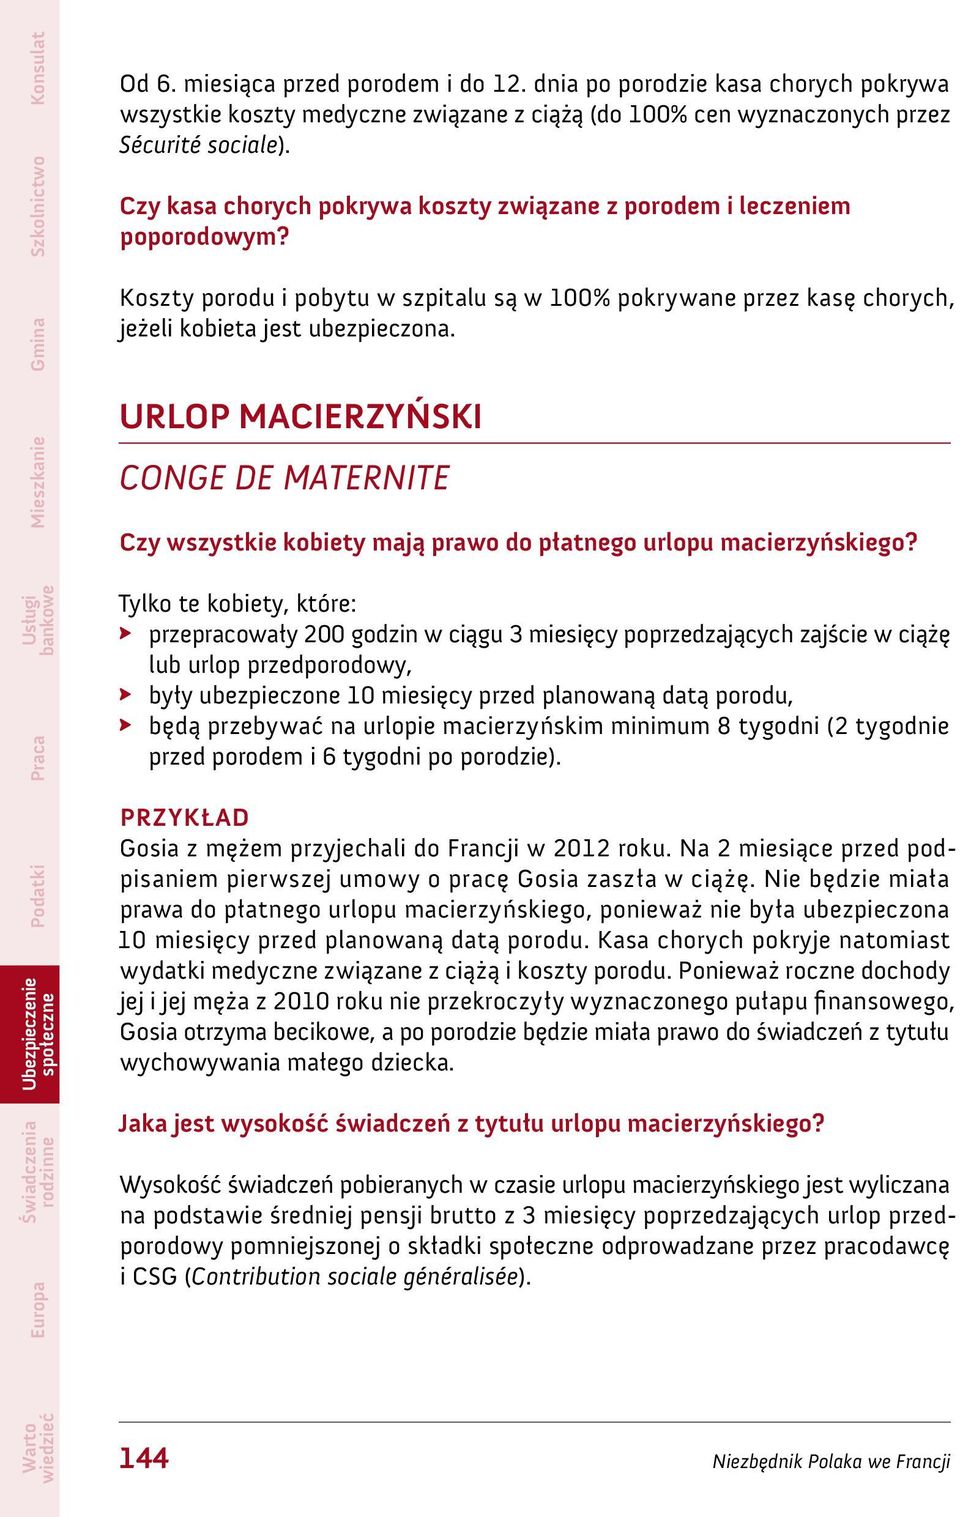 URLOP MACIERZYŃSKI CONGE DE MATERNITE Czy wszystkie kobiety mają prawo do płatnego urlopu macierzyńskiego?